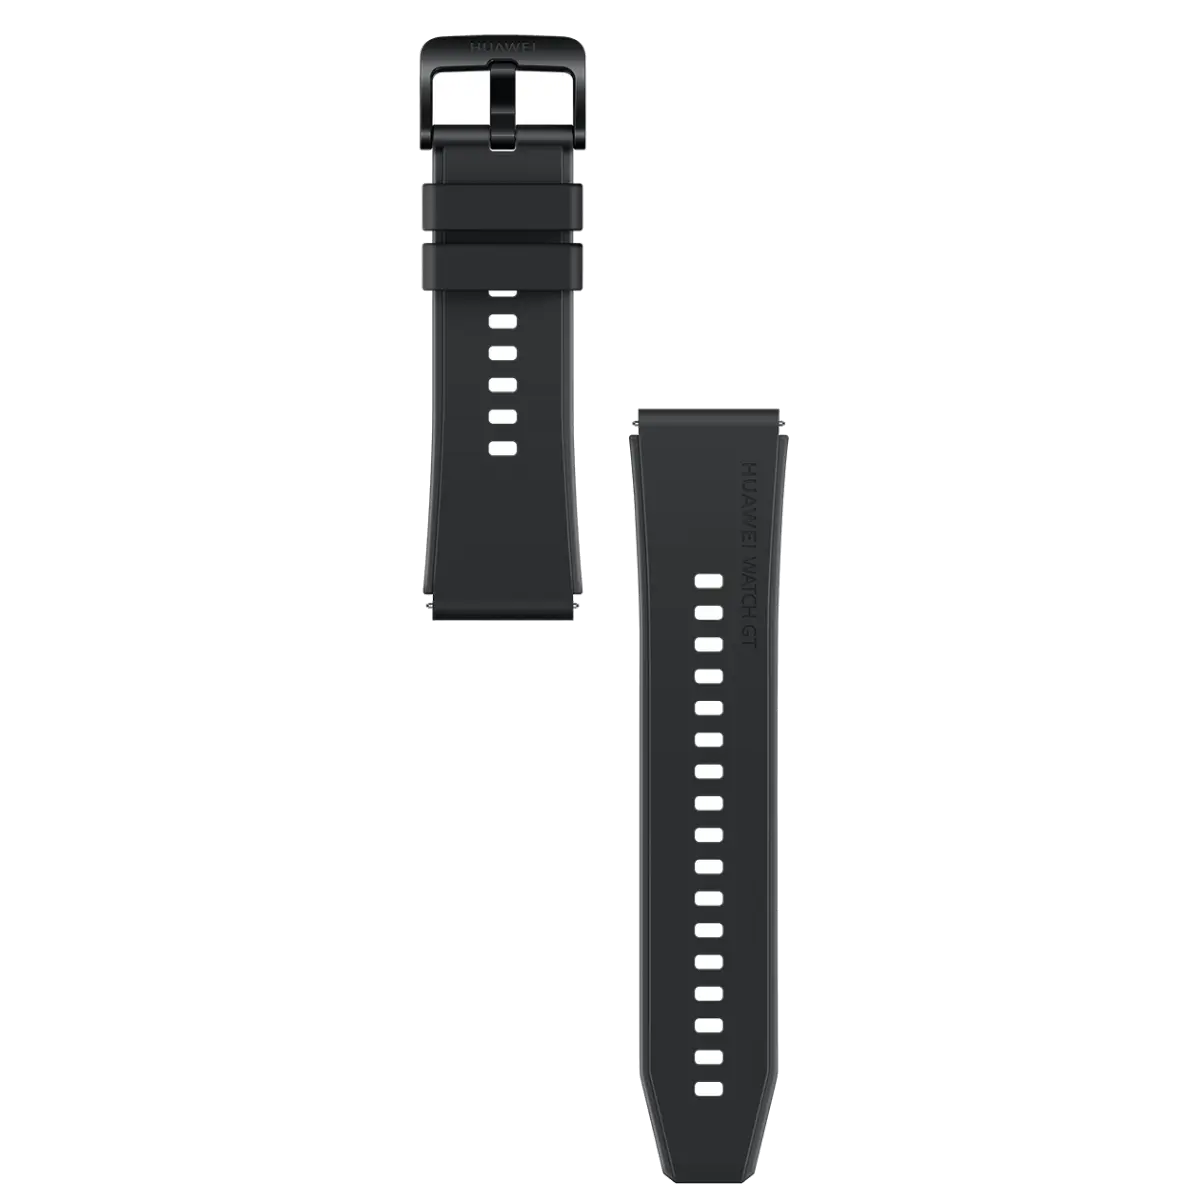 ساعة هواوي جي تي 2 برو الذكية، بلوتوث، شاشة تعمل باللمس 1.39 بوصة، مقاومة للماء، مستشعرات لتتبع الصحة، أسود ليلي